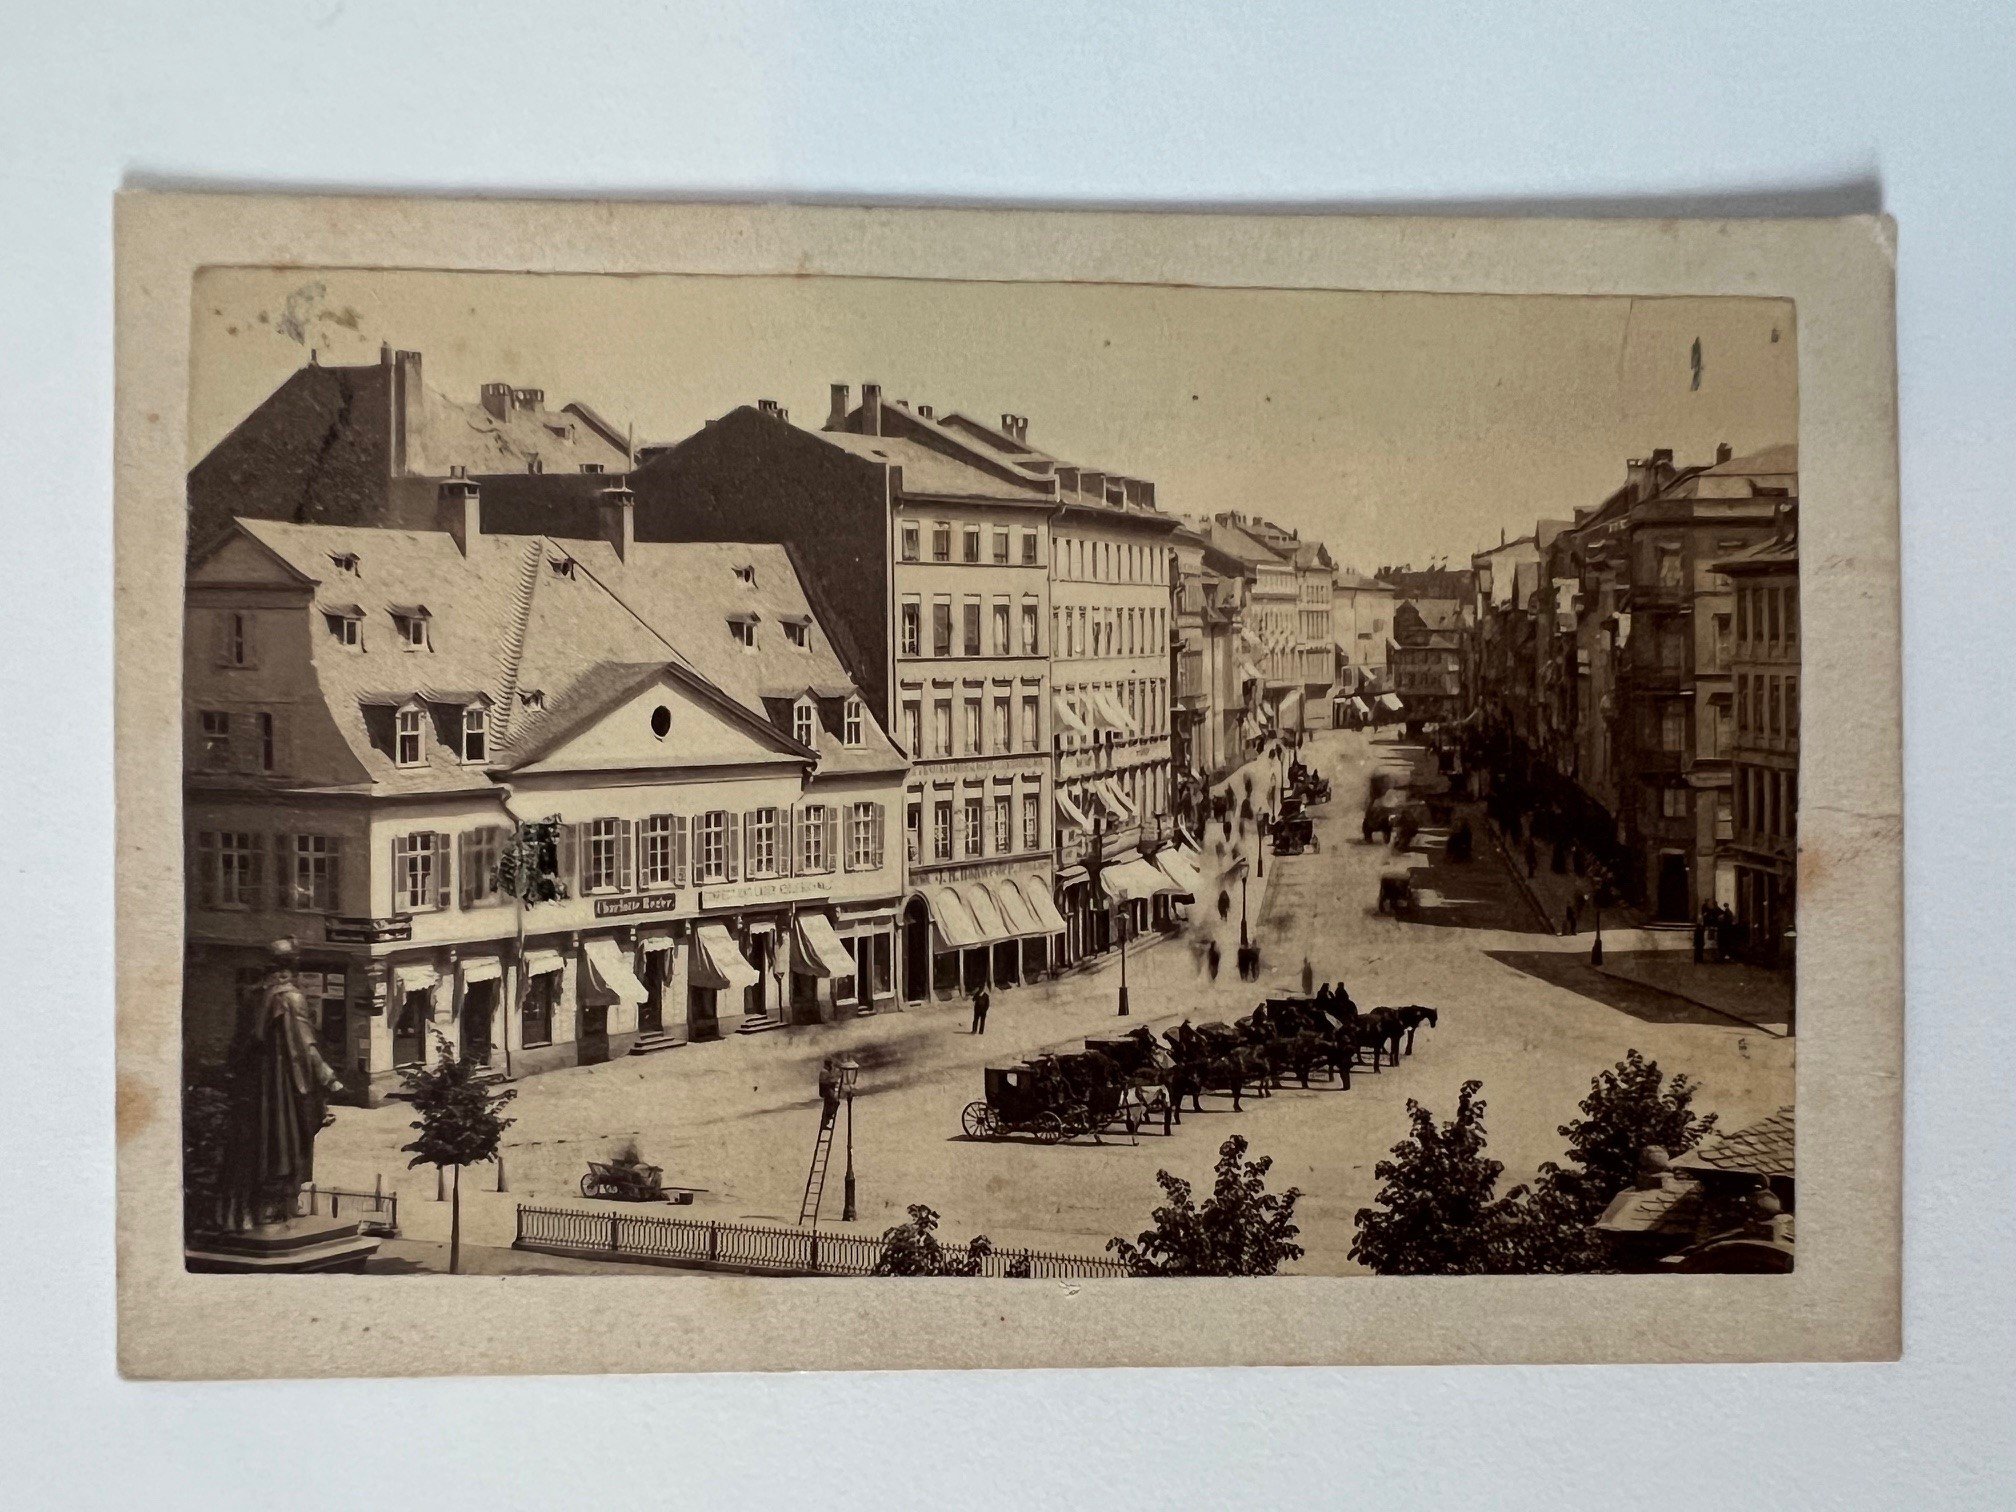 CdV, Unbekannter Fotograf, Frankfurt, Zeil, ca. 1865. (Taunus-Rhein-Main - Regionalgeschichtliche Sammlung Dr. Stefan Naas CC BY-NC-SA)